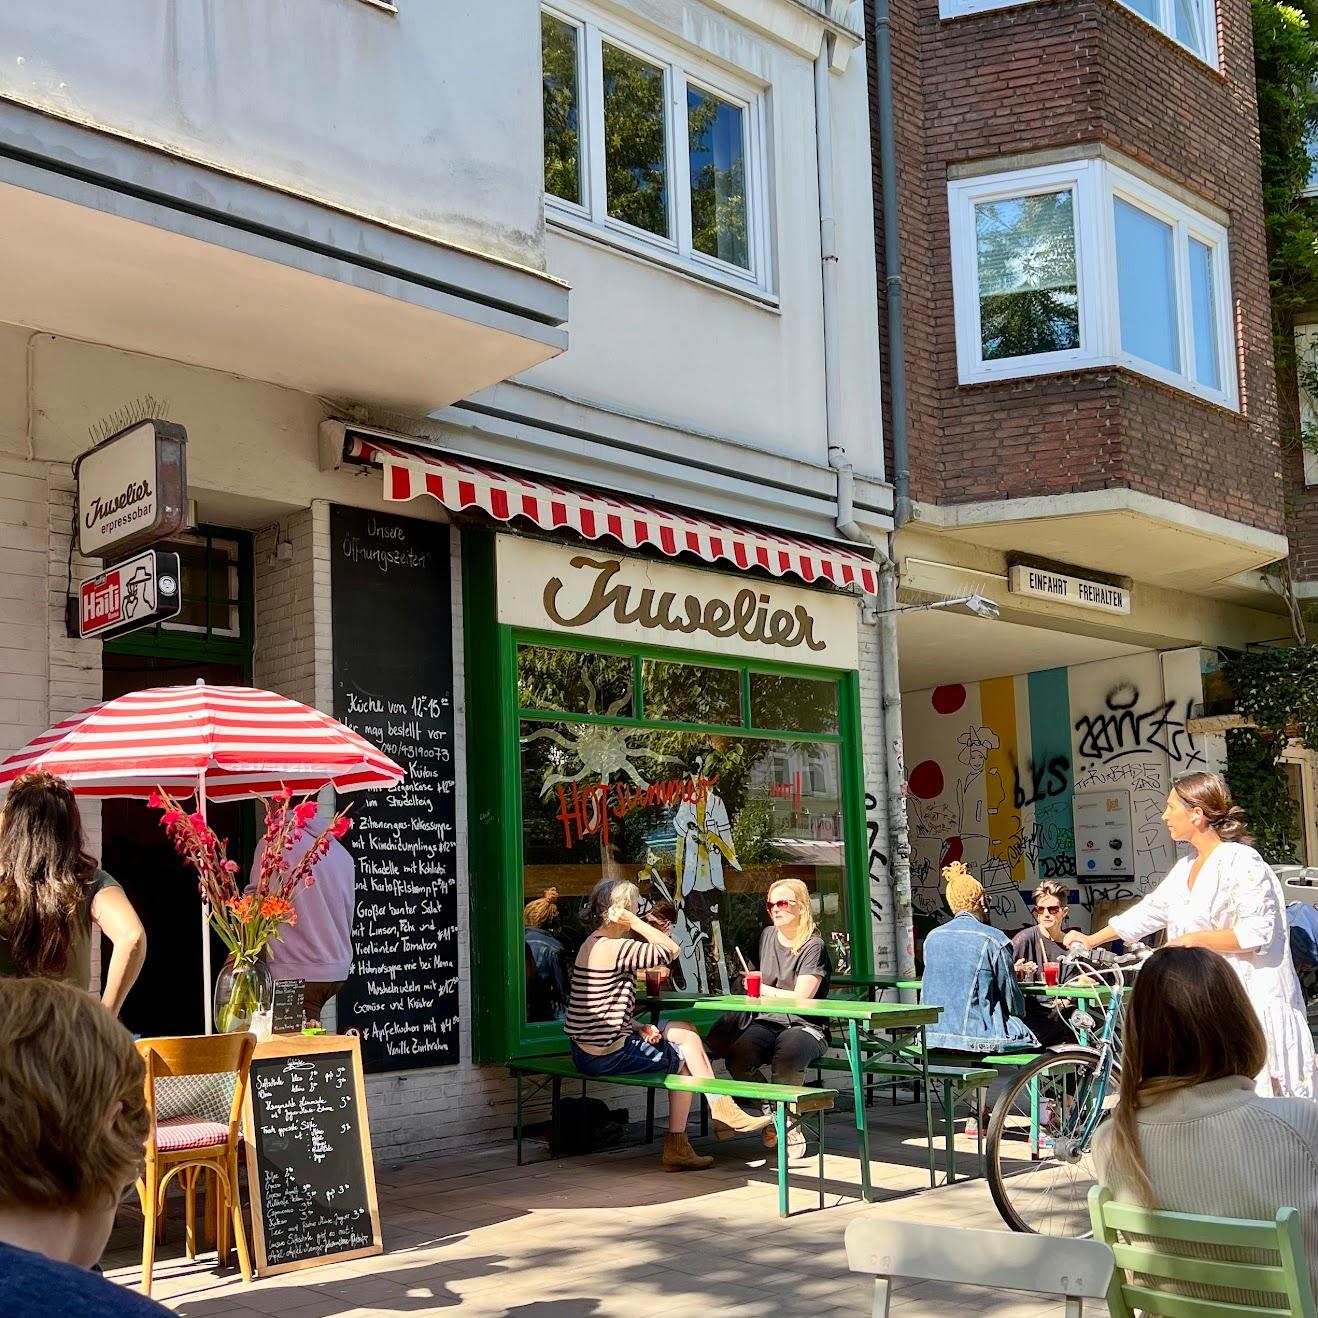 Restaurant "Juwelier Espressobar" in Hamburg